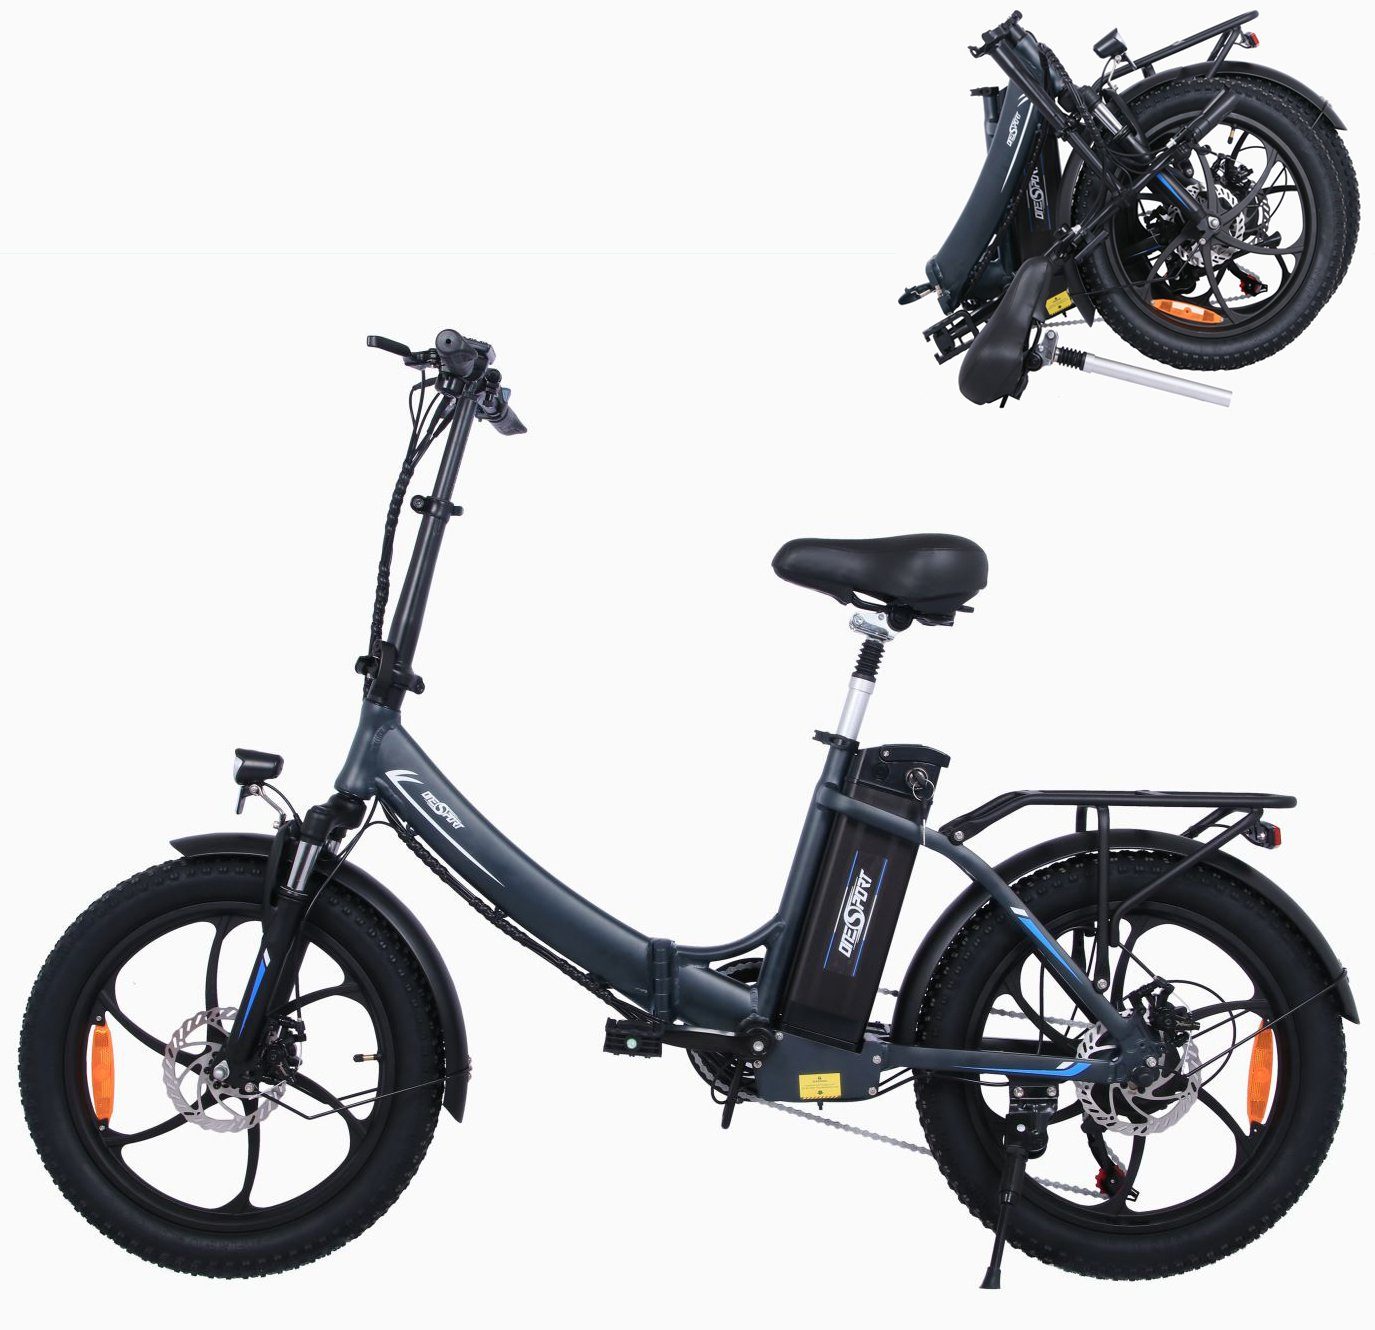 Fangqi E-Bike 20 Zoll Klapprad Elektrofahrrad,E-Bike,Shimano 7-Gang,48V/15Ah akku, Kettenschaltung, Heckmotor, (spar-set,E-Mountainbike, E-Dirtbike, MTB(Optionaler Gashebel: Nach dem Einbau des Gashebels kann ein rein elektrischer Modus erreicht werden, Fahrmodi: Pedal-Modus und Power-Assist-Modus), Stadtfahrräder, Smartbikes, Elektrofahrräder für Herren und Damen), Datendisplay, Lithium-Ionen-Akku, Höhenverstellbare Sattelstütze Silber | E-Falträder